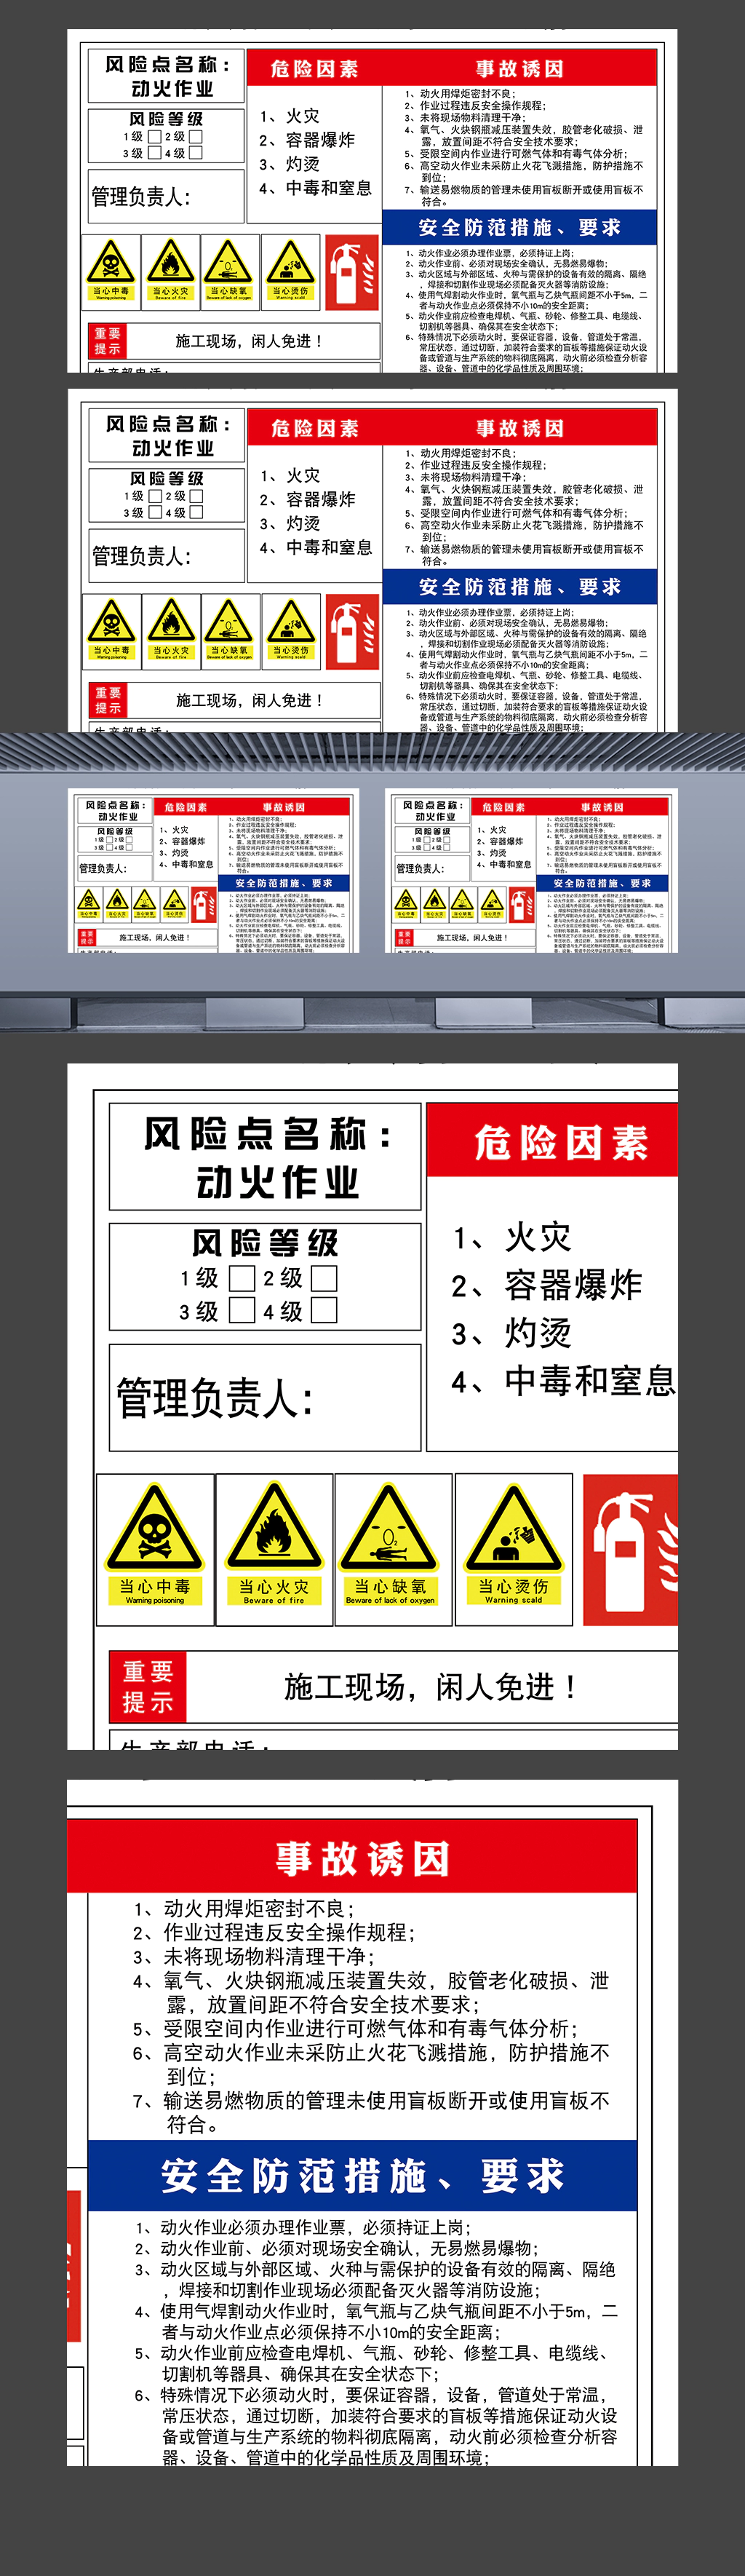 动火作业安全风险点告知牌施工现场警示海报展板